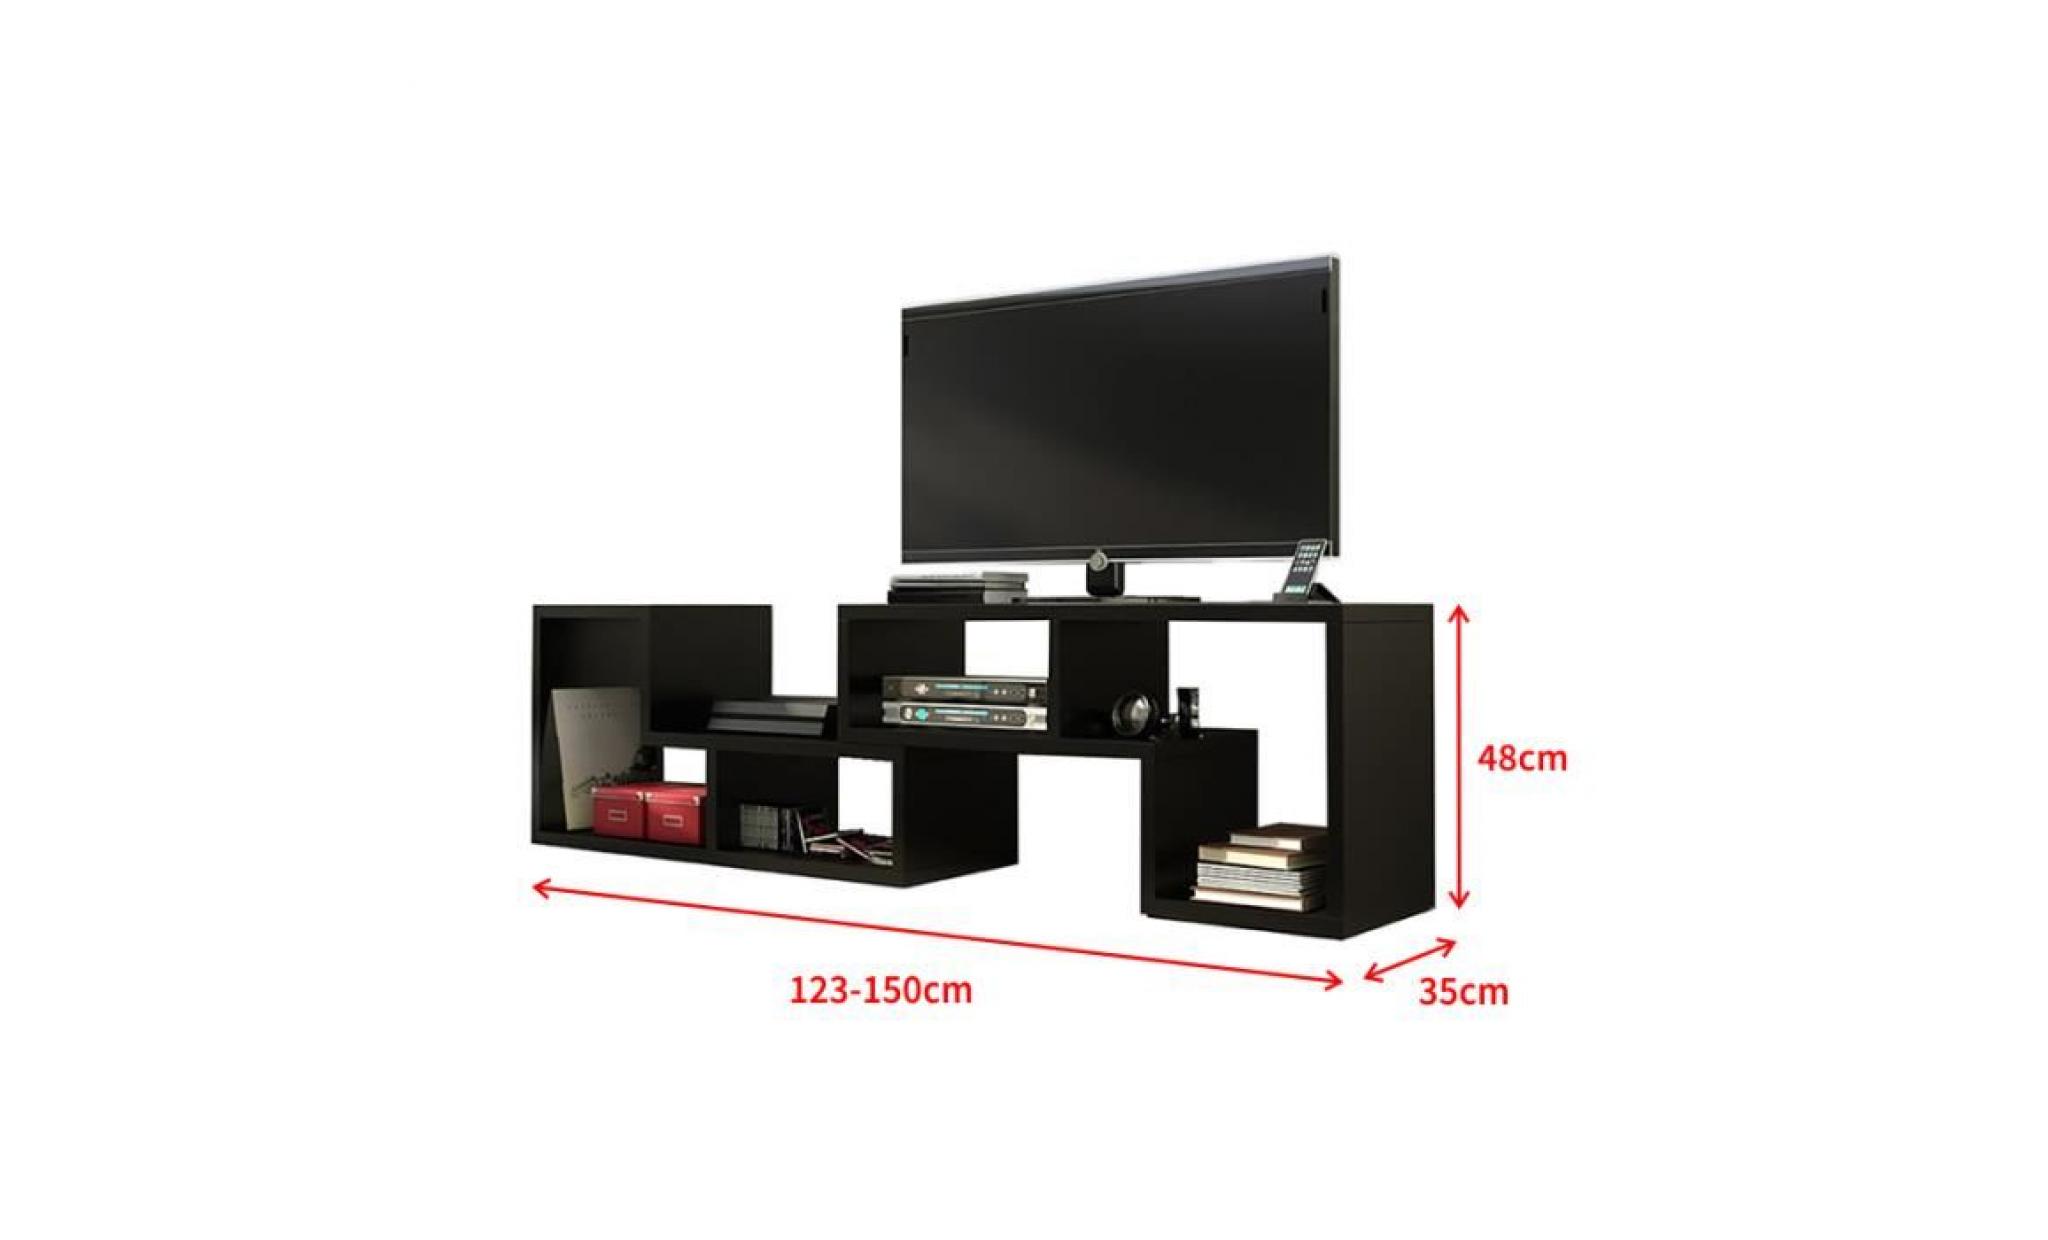 meuble tv / table basse / bibliothèque   collect 3 en 1   123 150 cm   noir mat   style contemporain   pratique et multifonctionnel pas cher